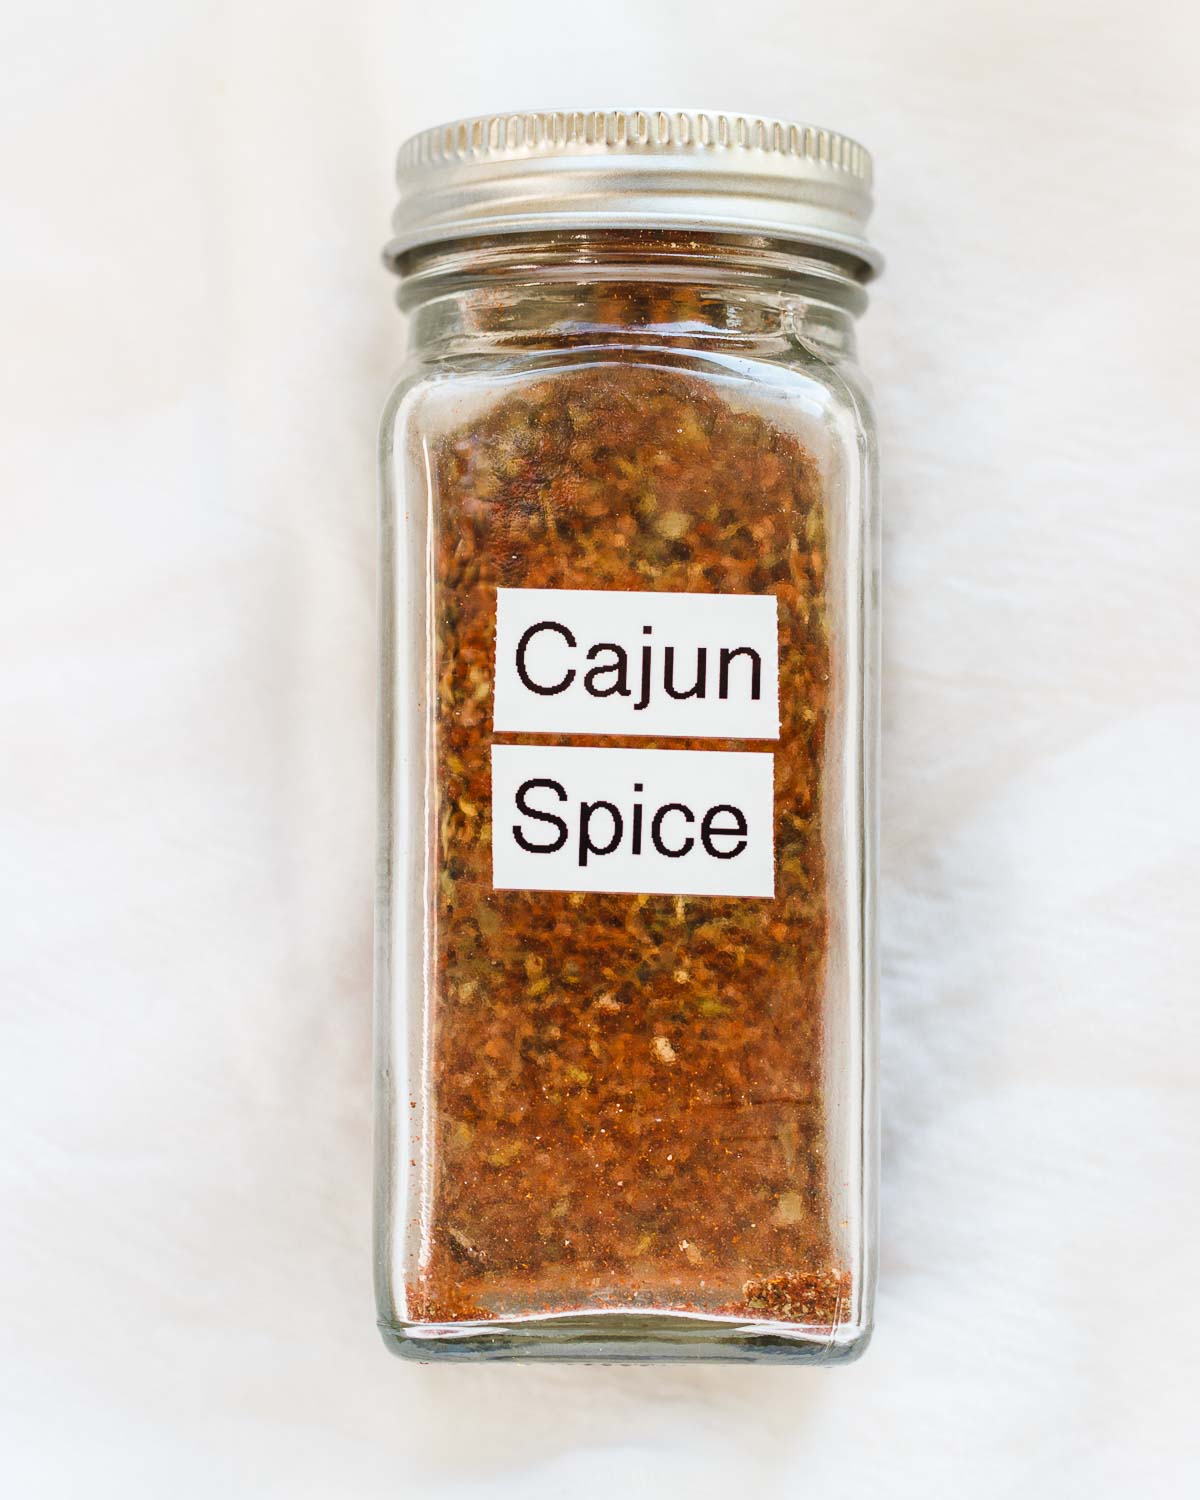 A labeled jar of homemade Cajun seasoning mix.